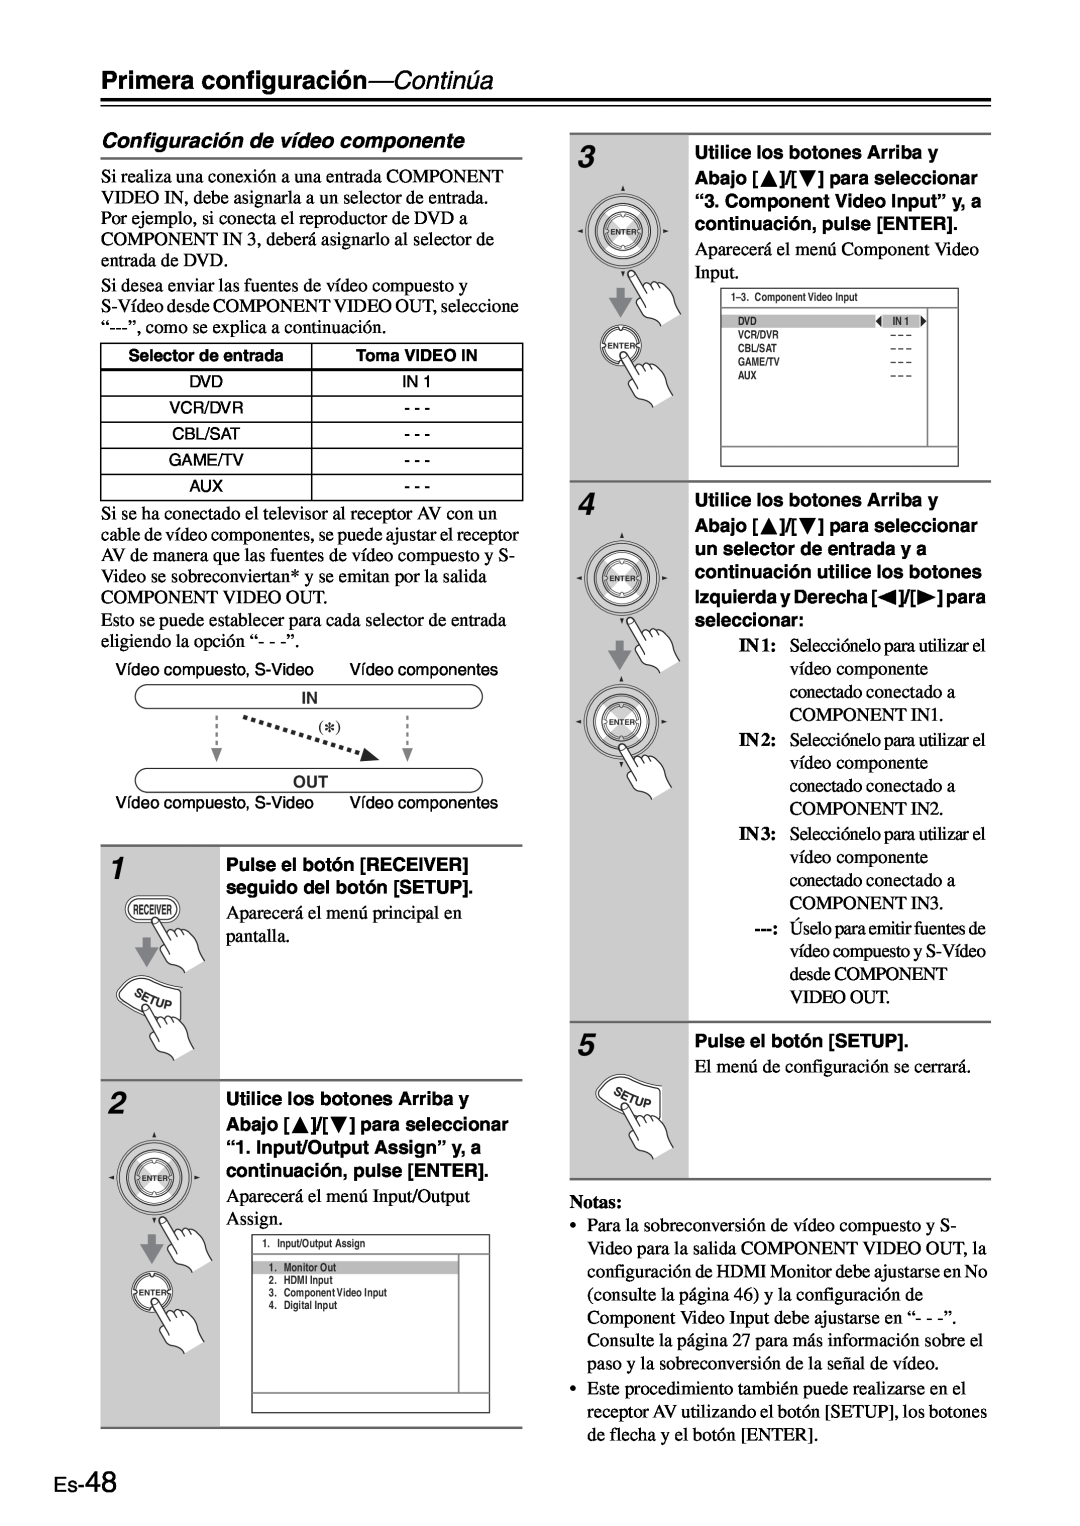 Onkyo TX-SR705 manual Configuración de vídeo componente, Es-48, Primera configuración—Continúa, Notas 